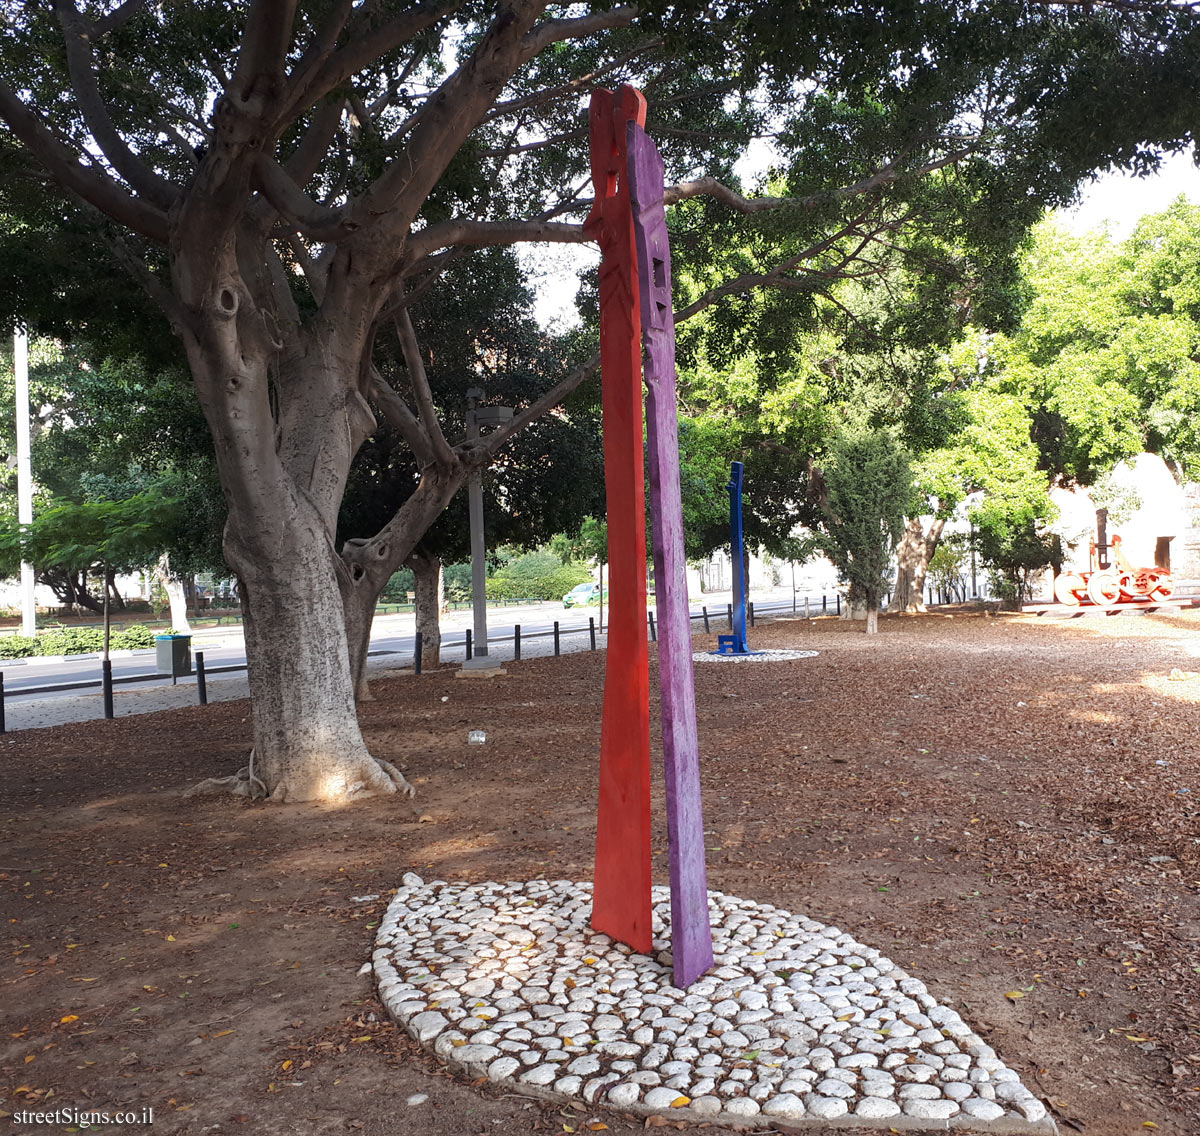 Tel Aviv - Tomarkin sculptures at Abu Nabot Park - Samurai Dialogue